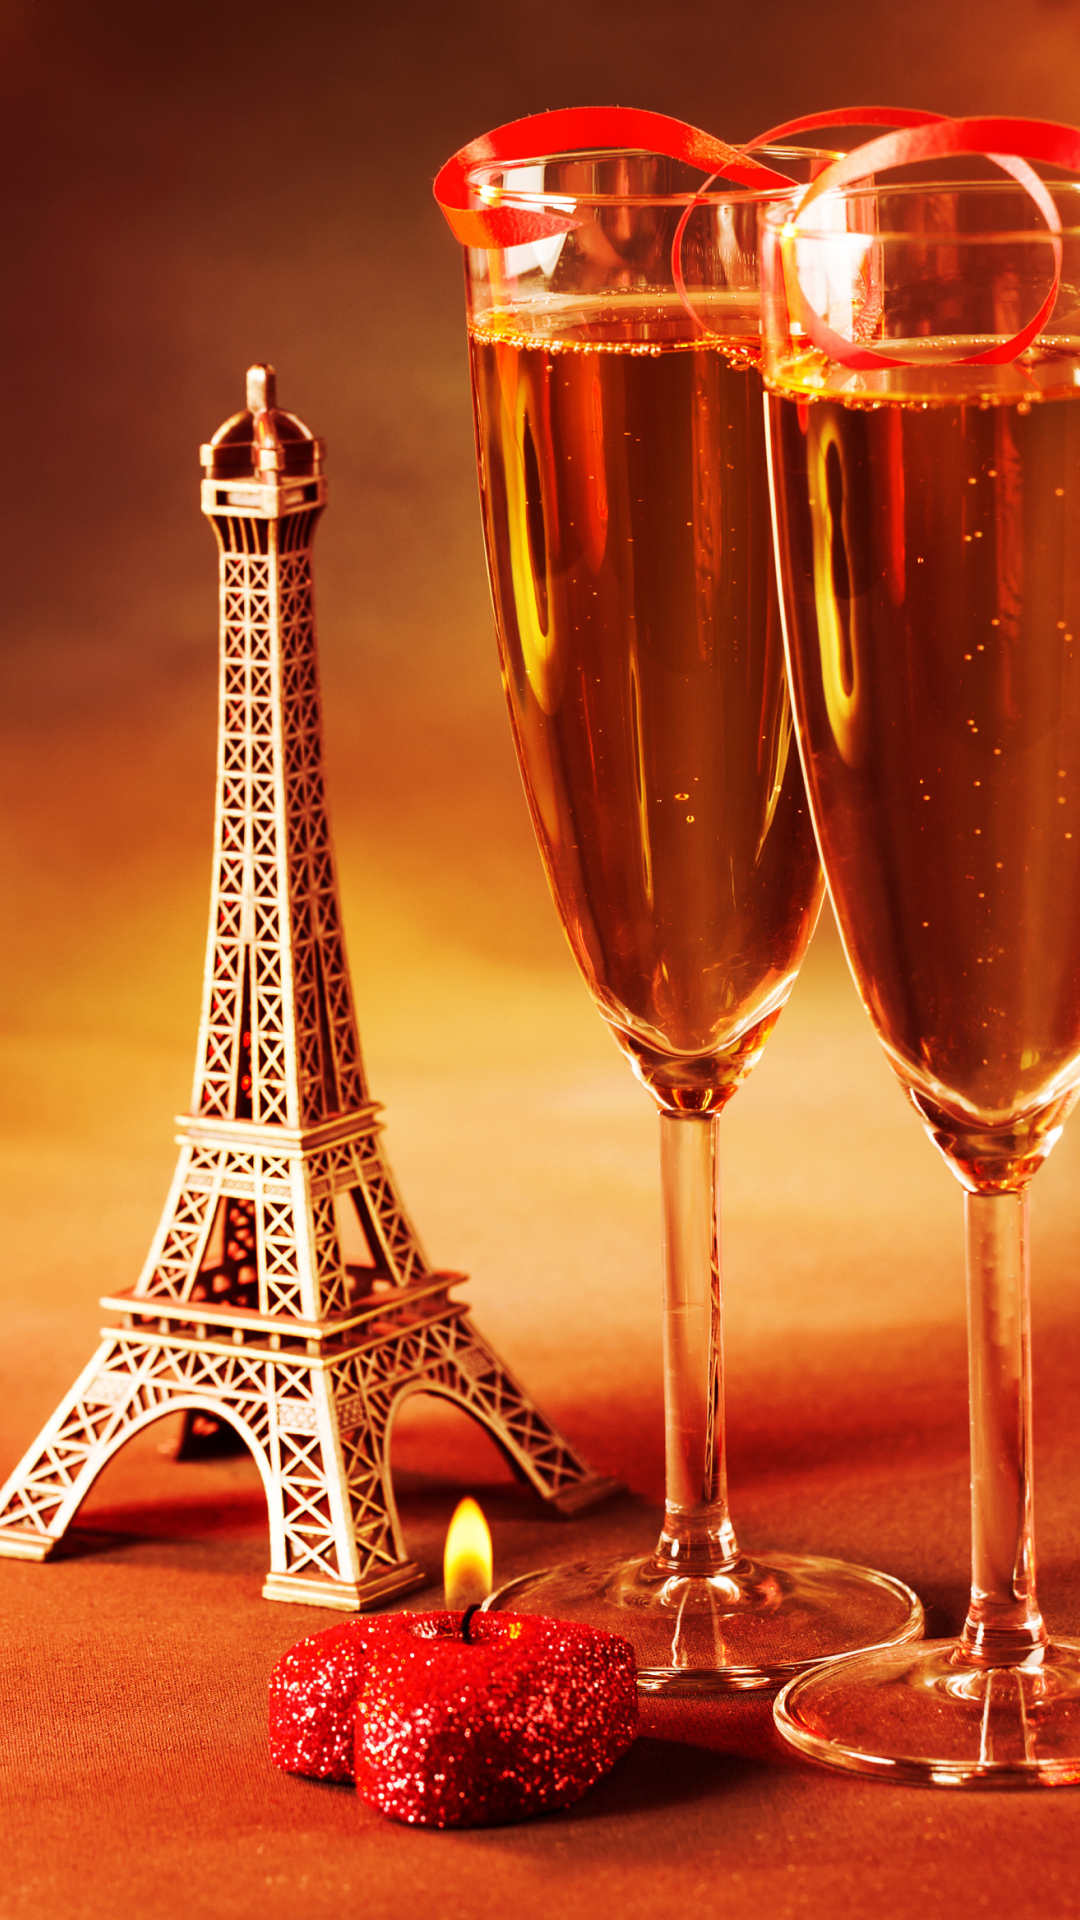 Обои Paris Mini Eiffel Tower And Champagne 1080x1920